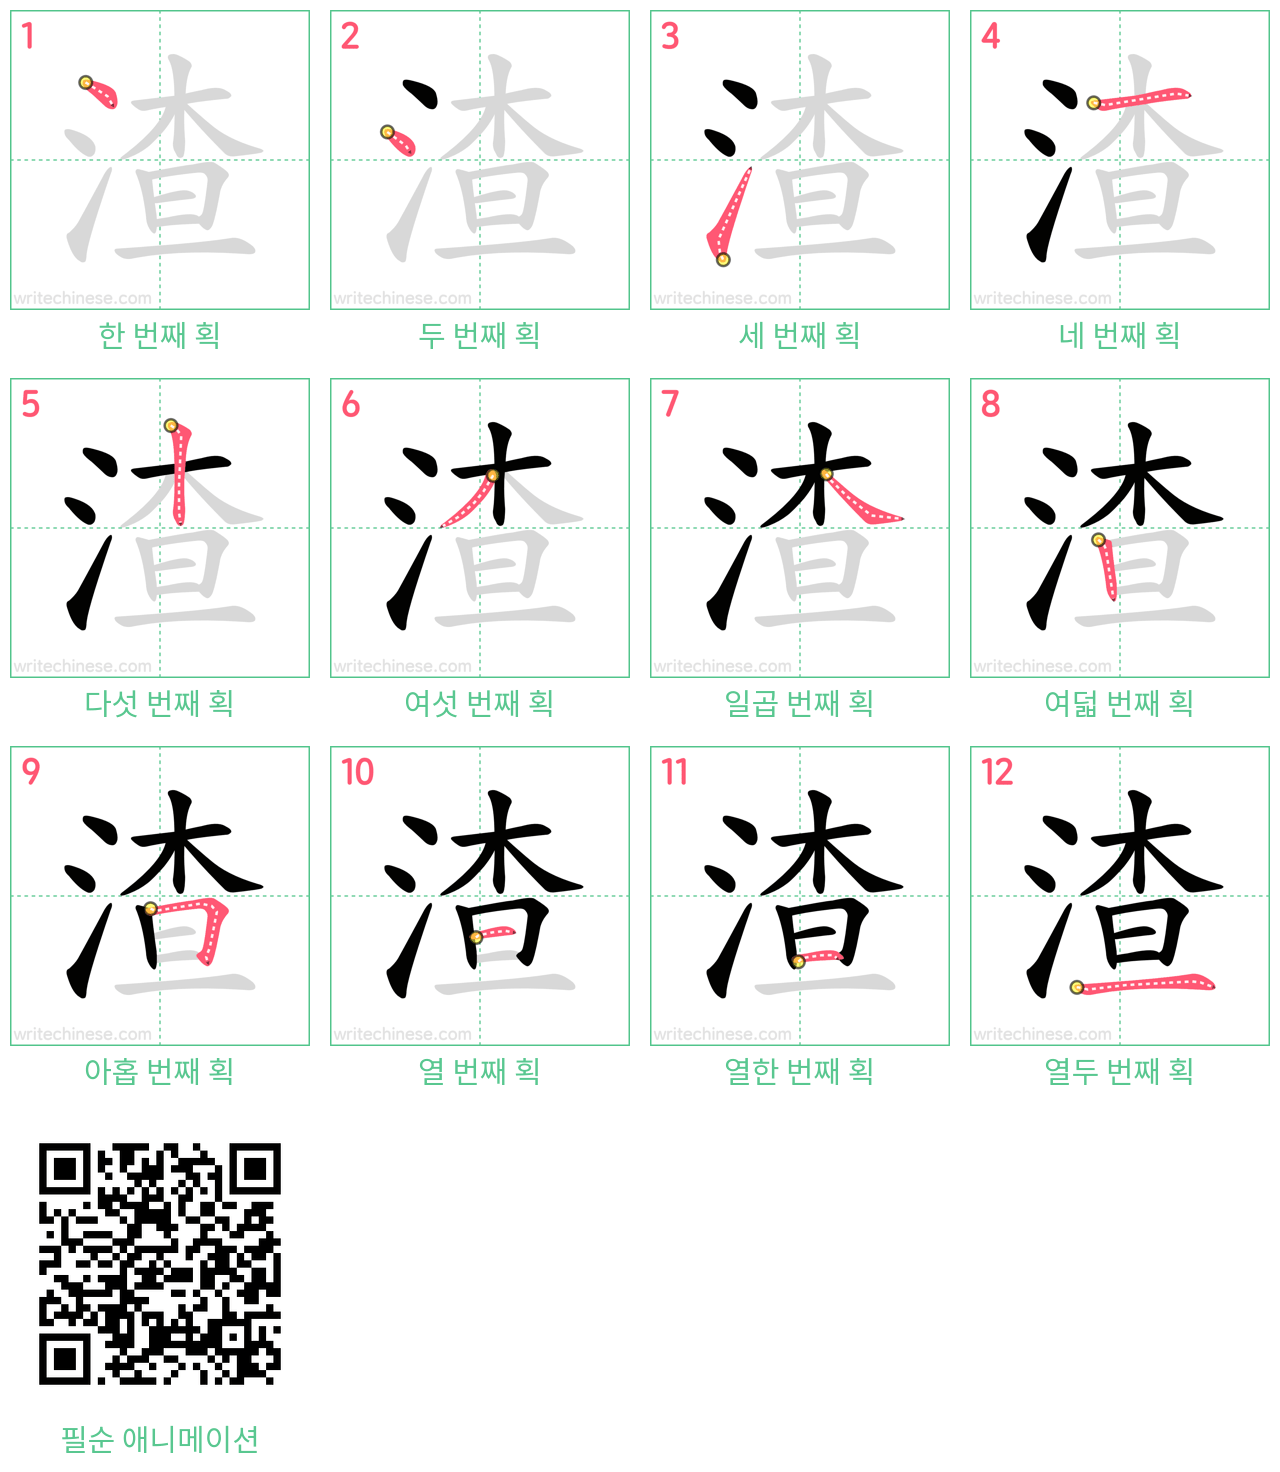 渣 step-by-step stroke order diagrams